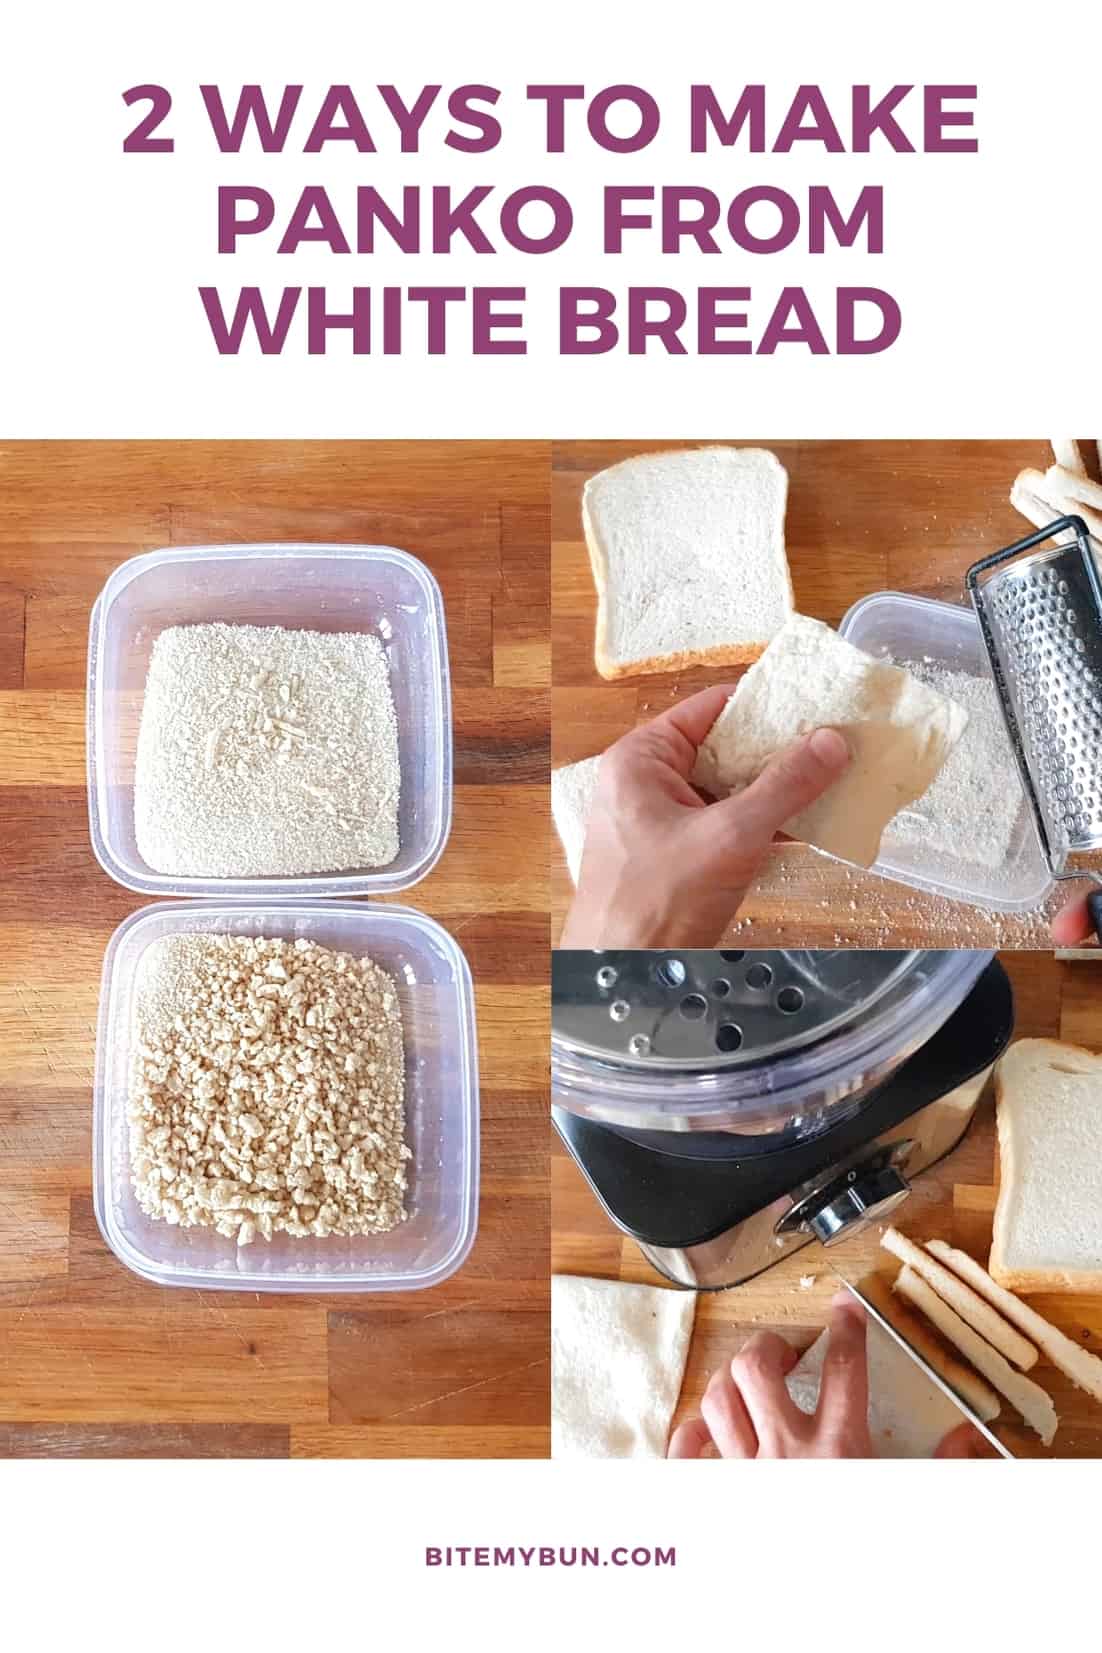 흰 빵으로 판코를 만드는 2가지 방법